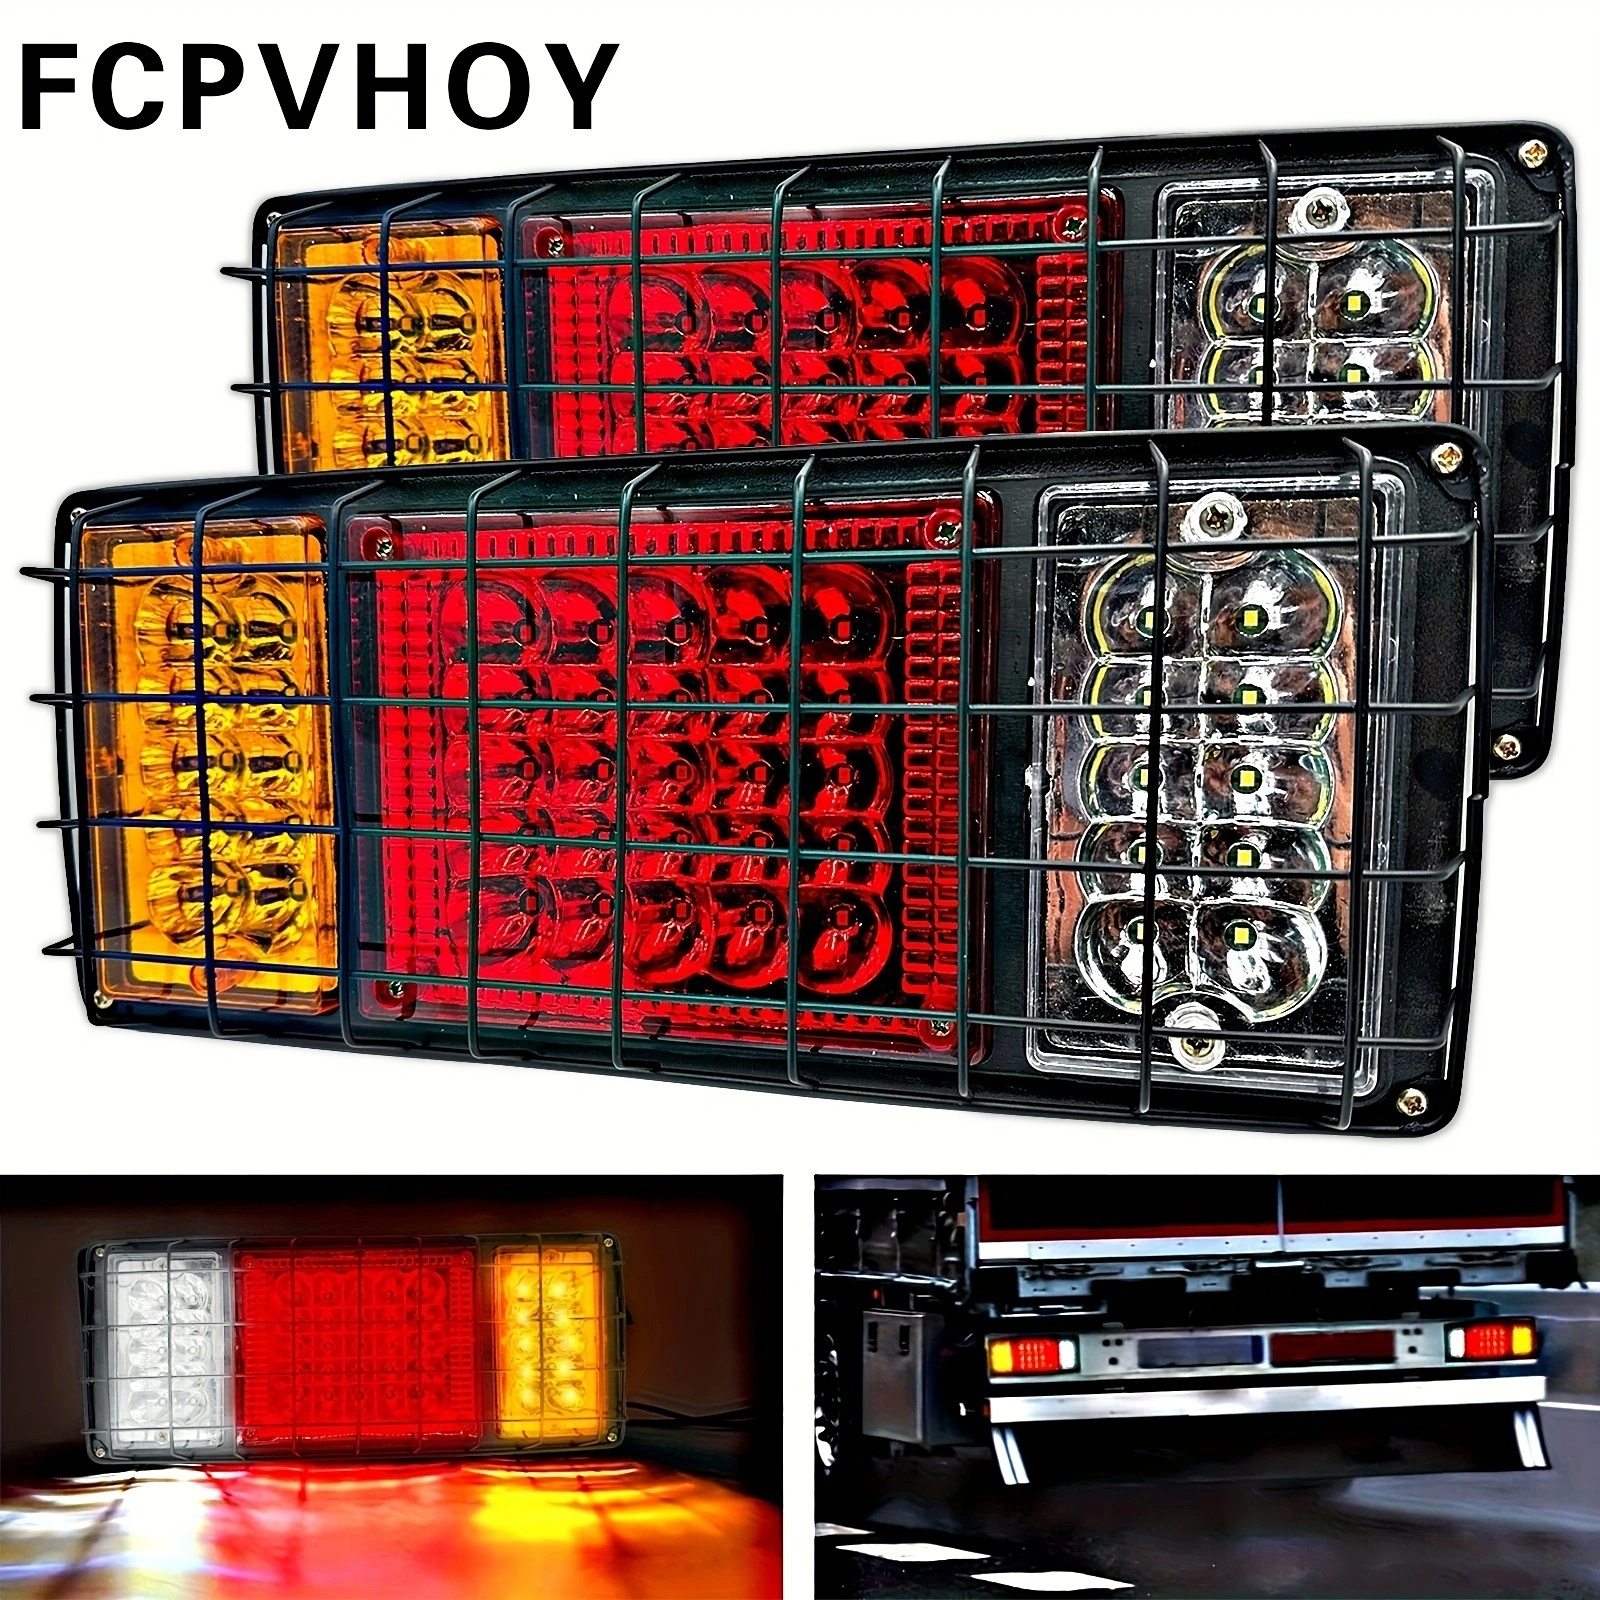 Feux arrière à LED, 2 pièces 12 V/24 V LED feux de recul arrière à LED  tournez Ute camion remorque indicateur de caravane(12V)